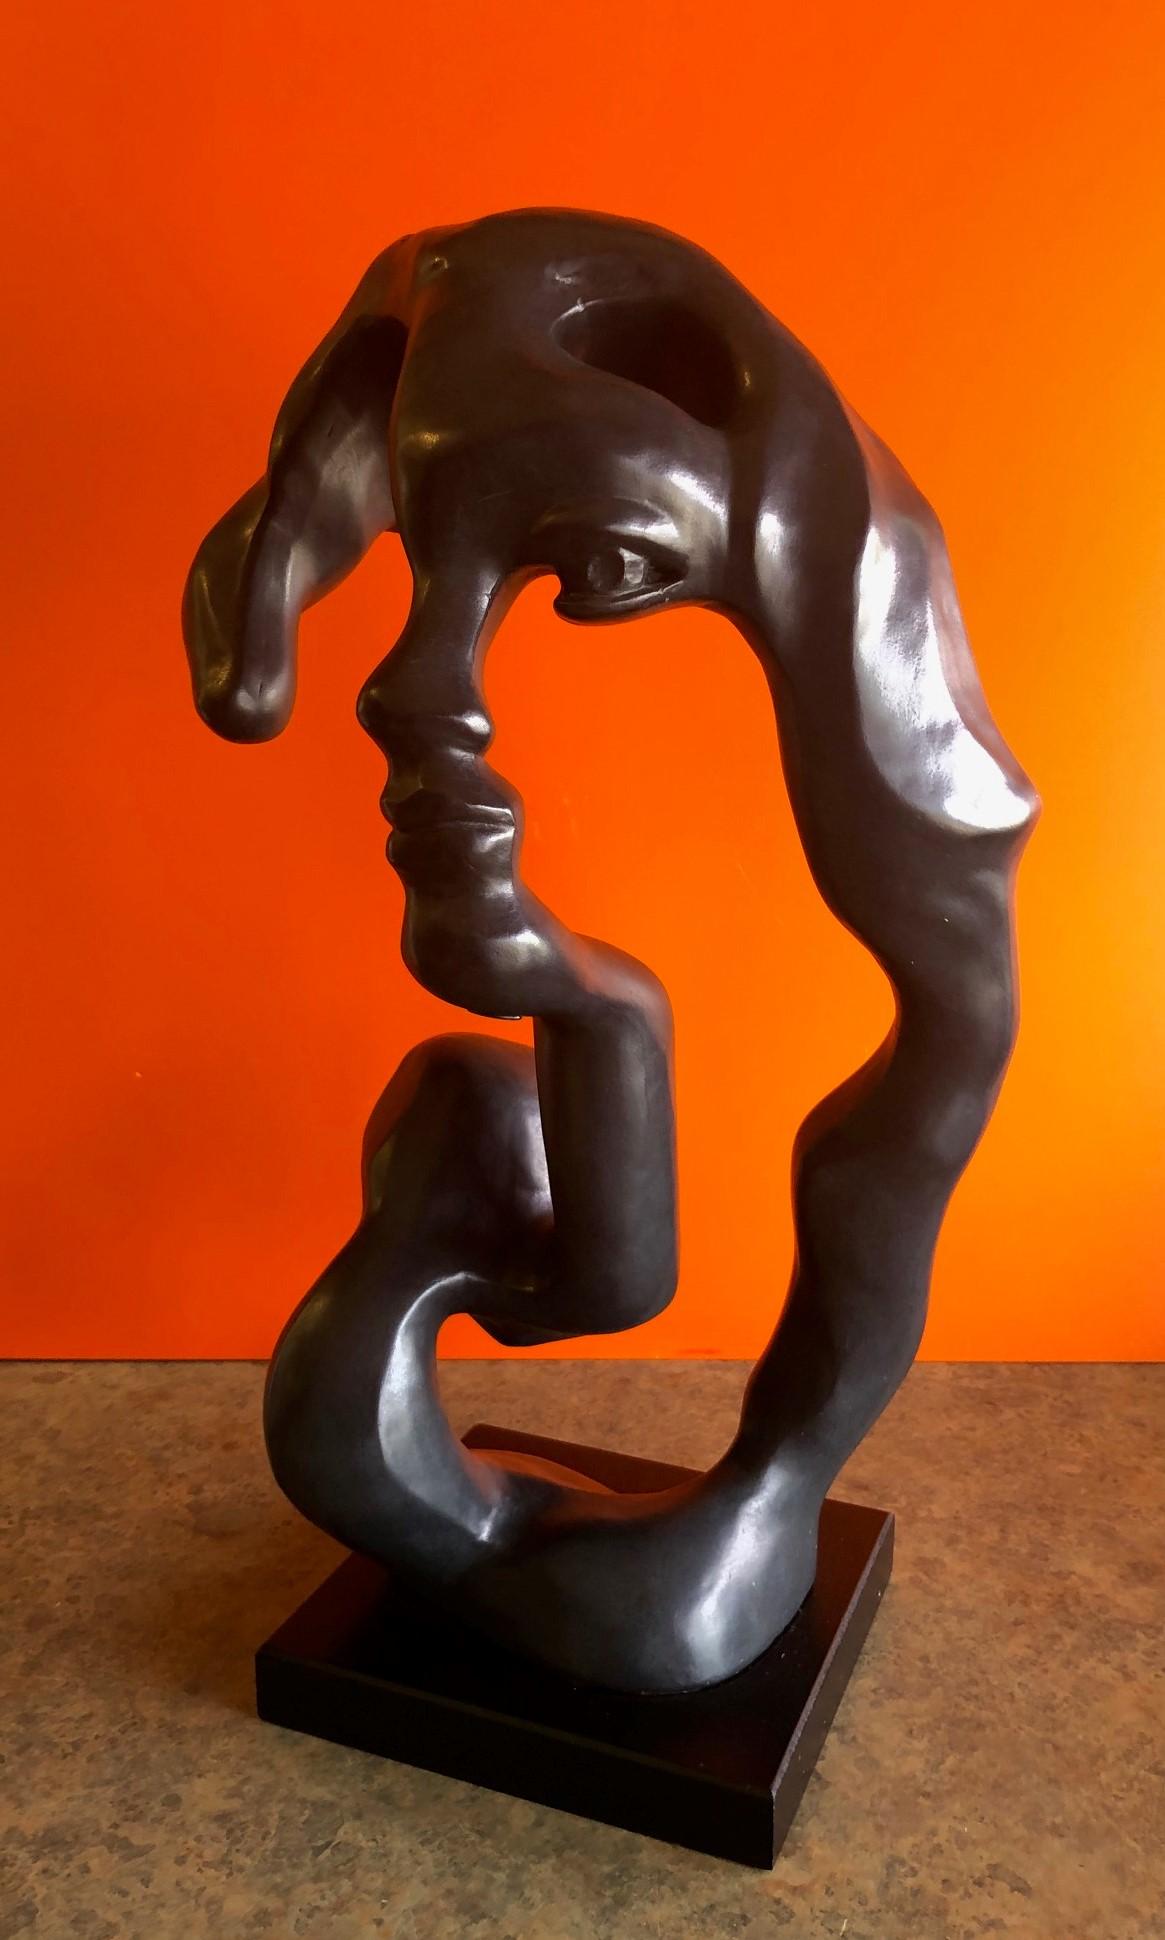 Modern abstract sculpture by Czech-American artist Klara Sever for Austin Sculpture entitled 